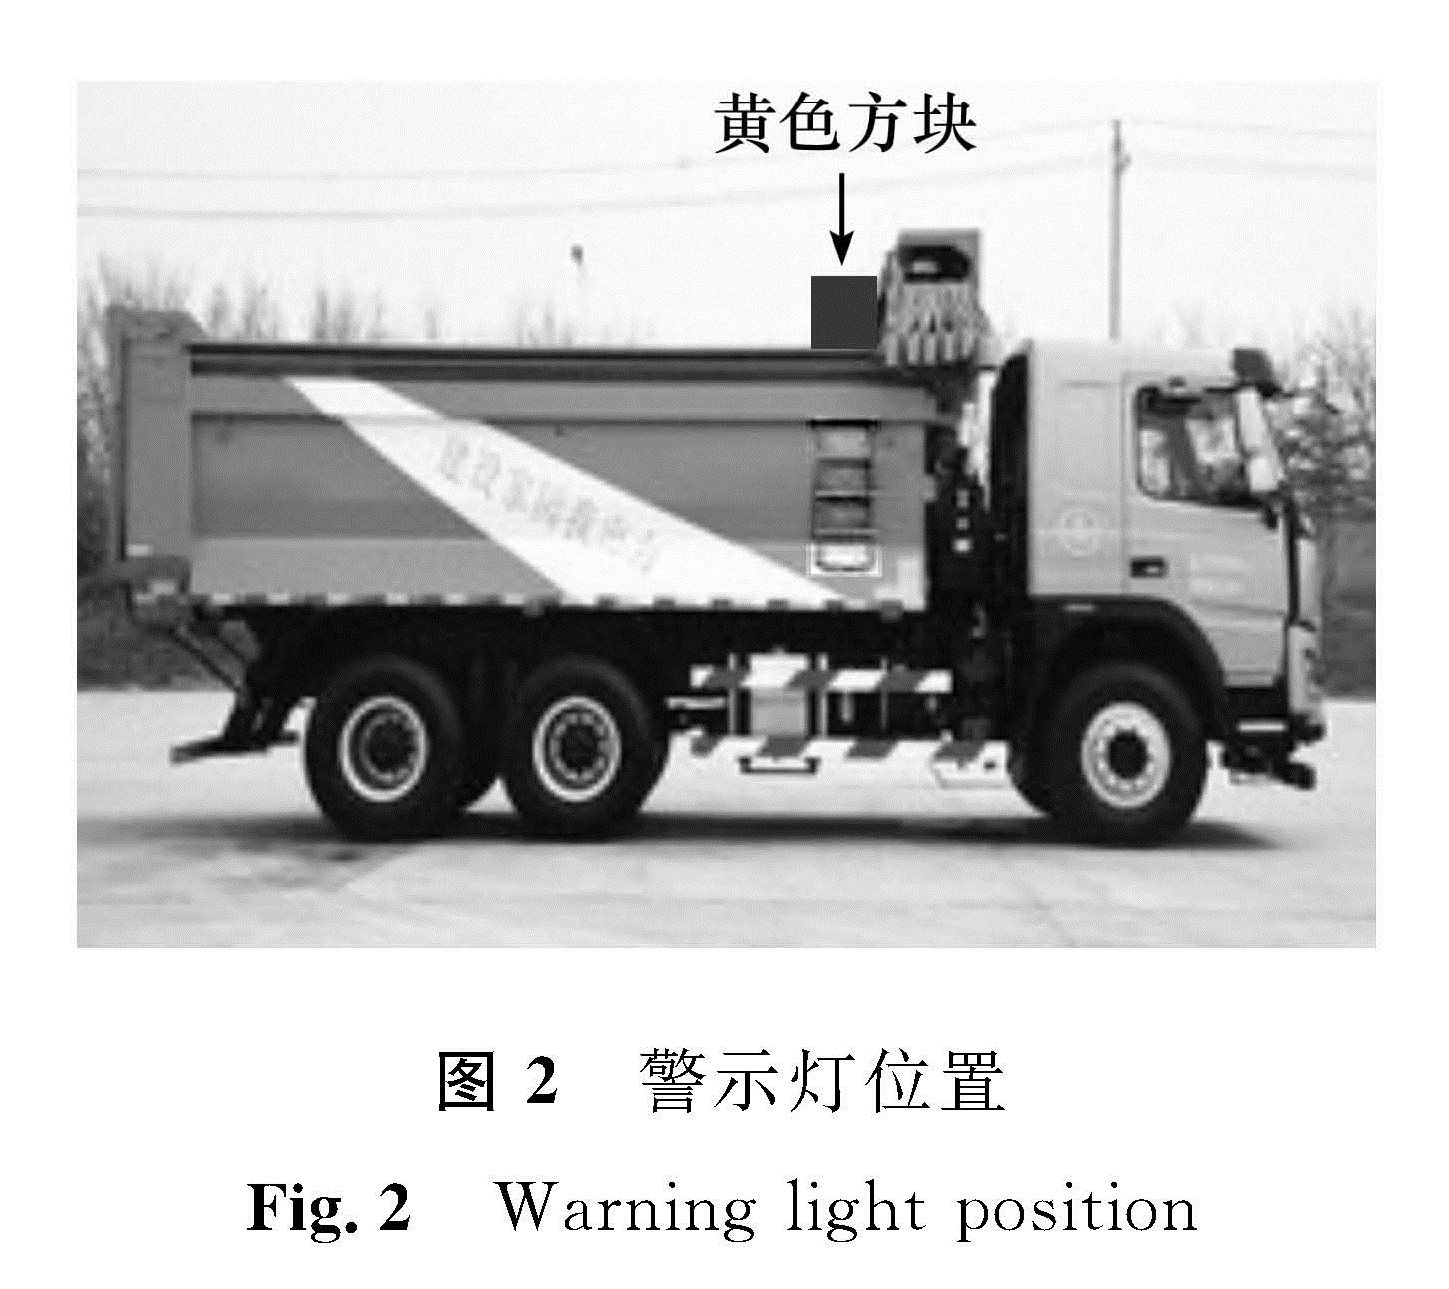 图2 警示灯位置 <br/>Fig.2 Warning light position